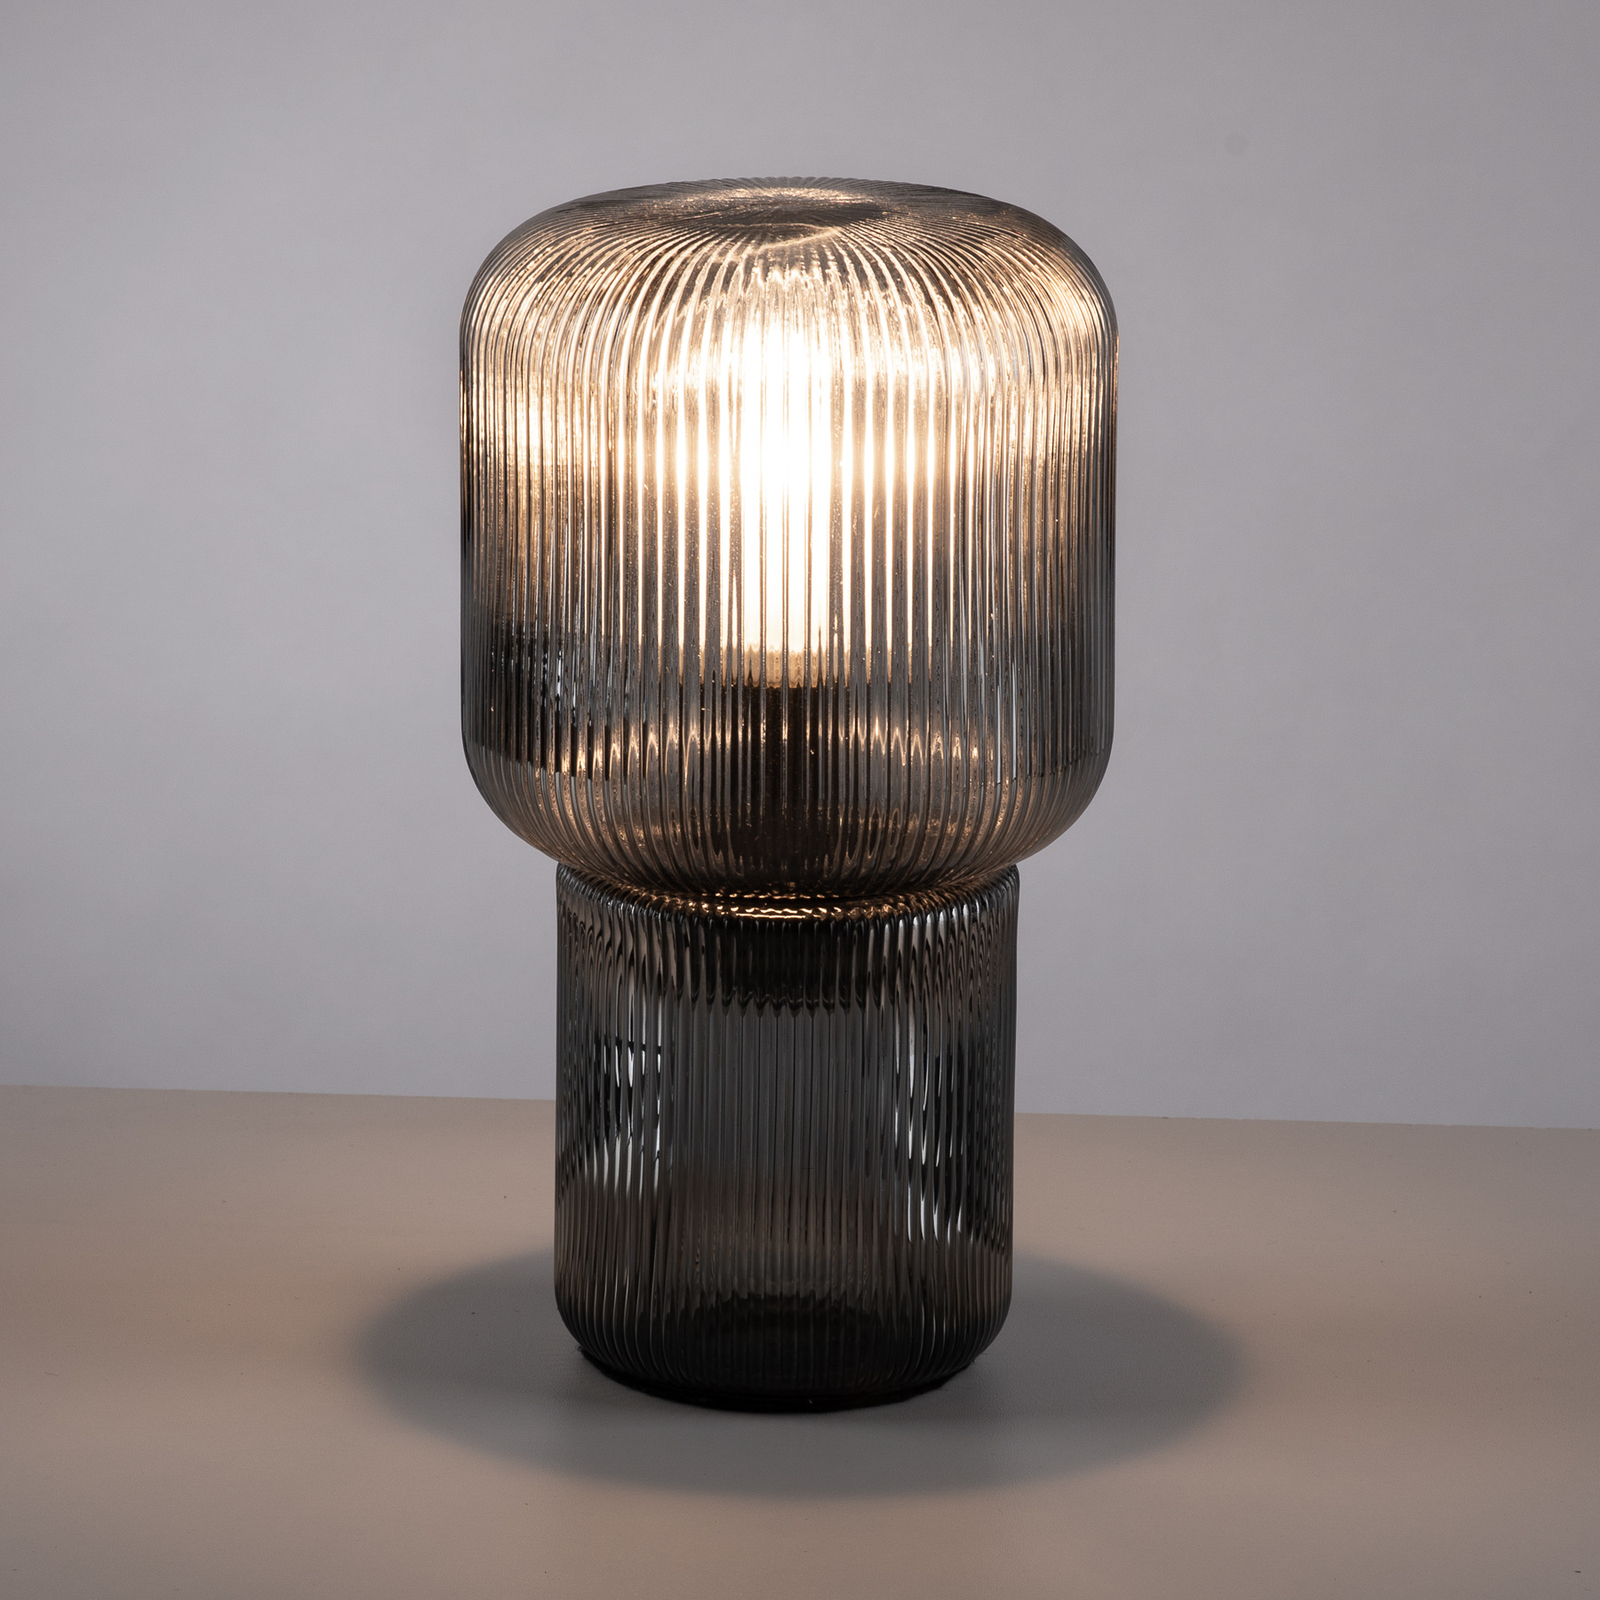 Mashi asztali lámpa üvegből, füstszürke